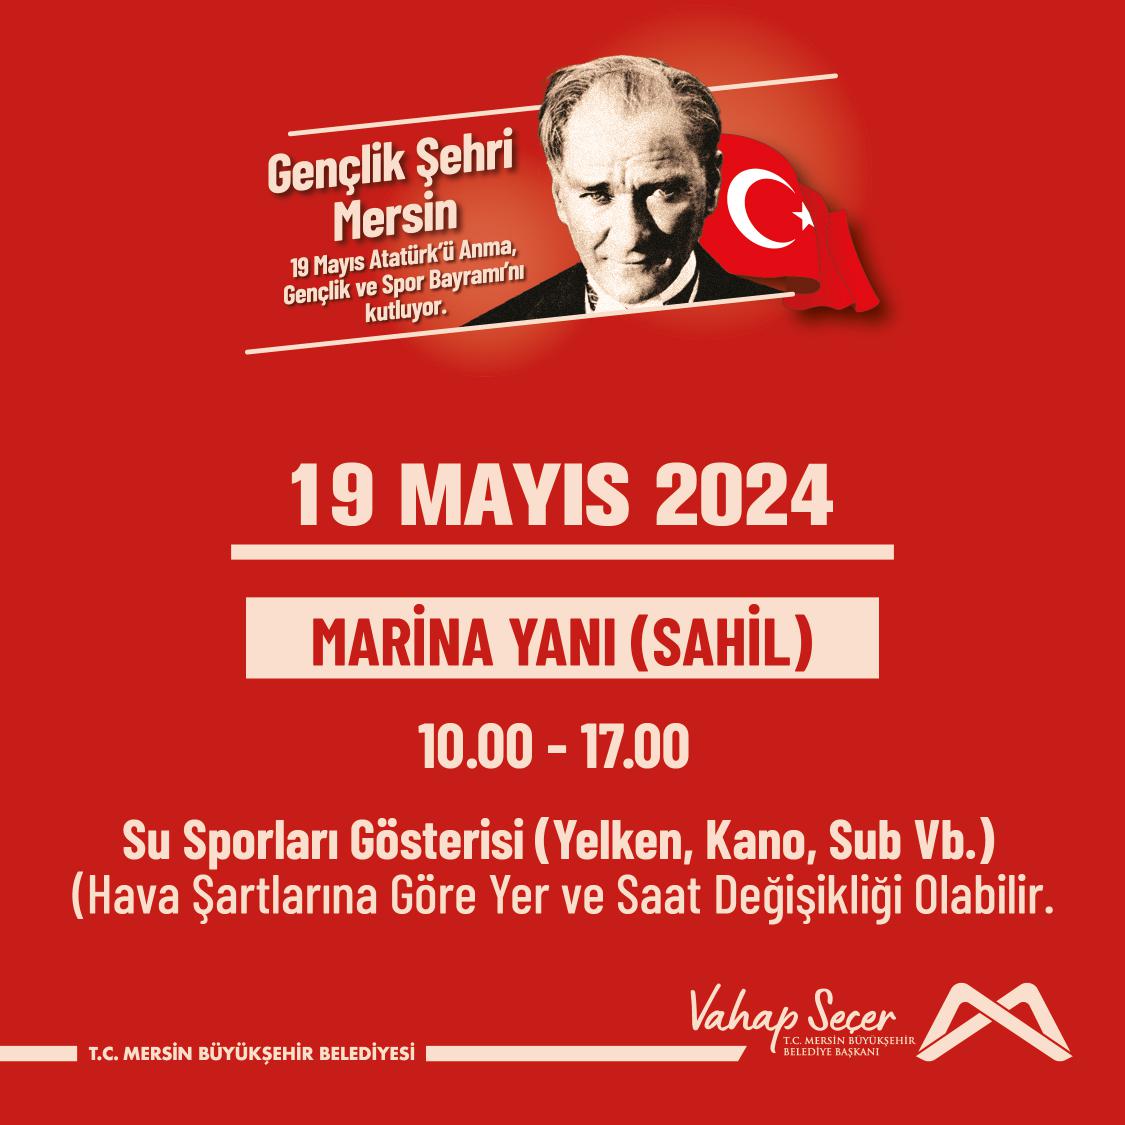 19 Mayıs Atatürk'ü Anma, Gençlik ve Spor Bayramı Su Sporları Gösterisinde buluşalım!